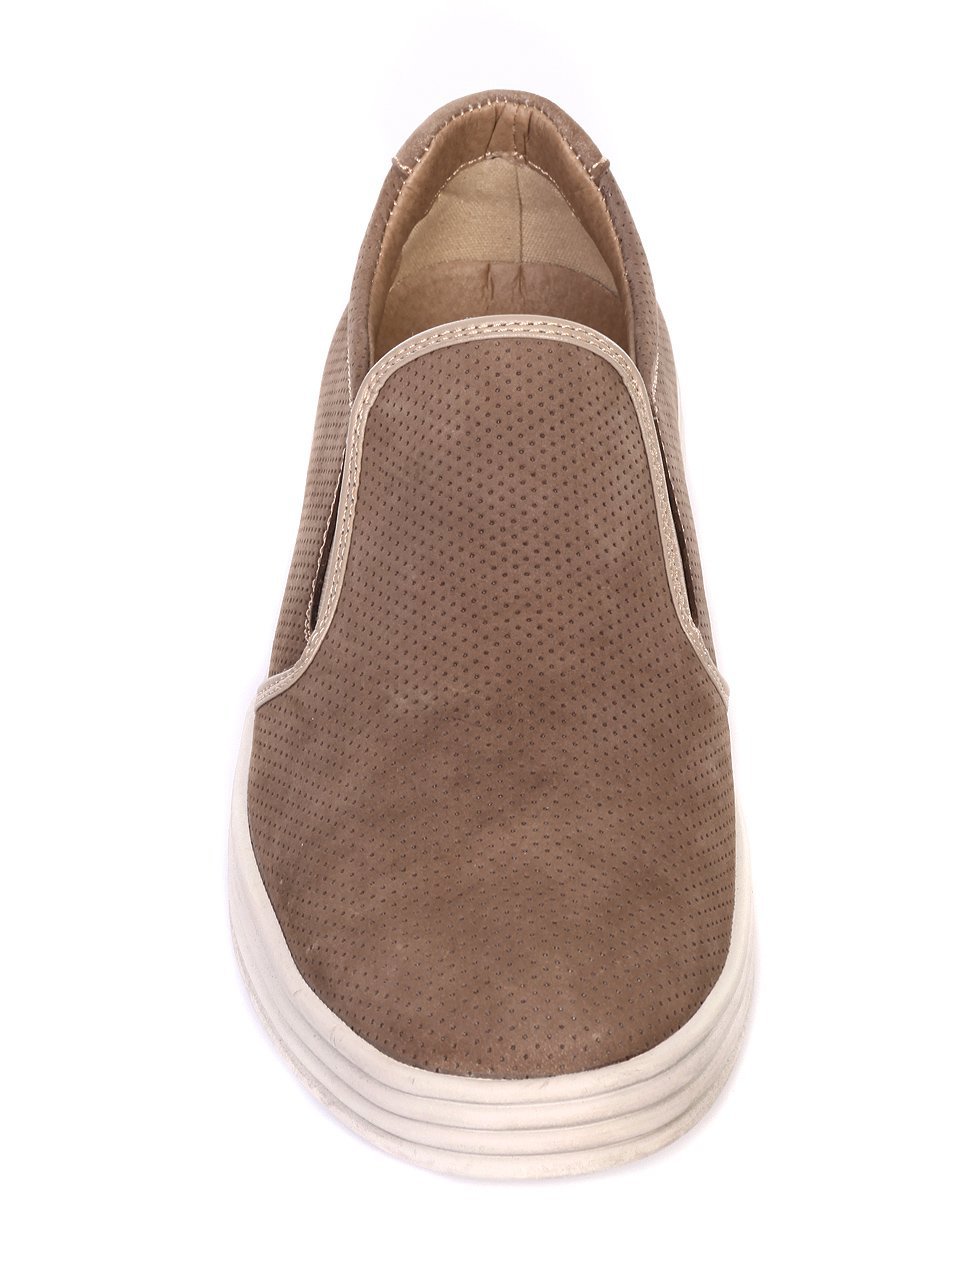 Ежедневни мъжки обувки от естествен набук в бежово 7N-18112 beige